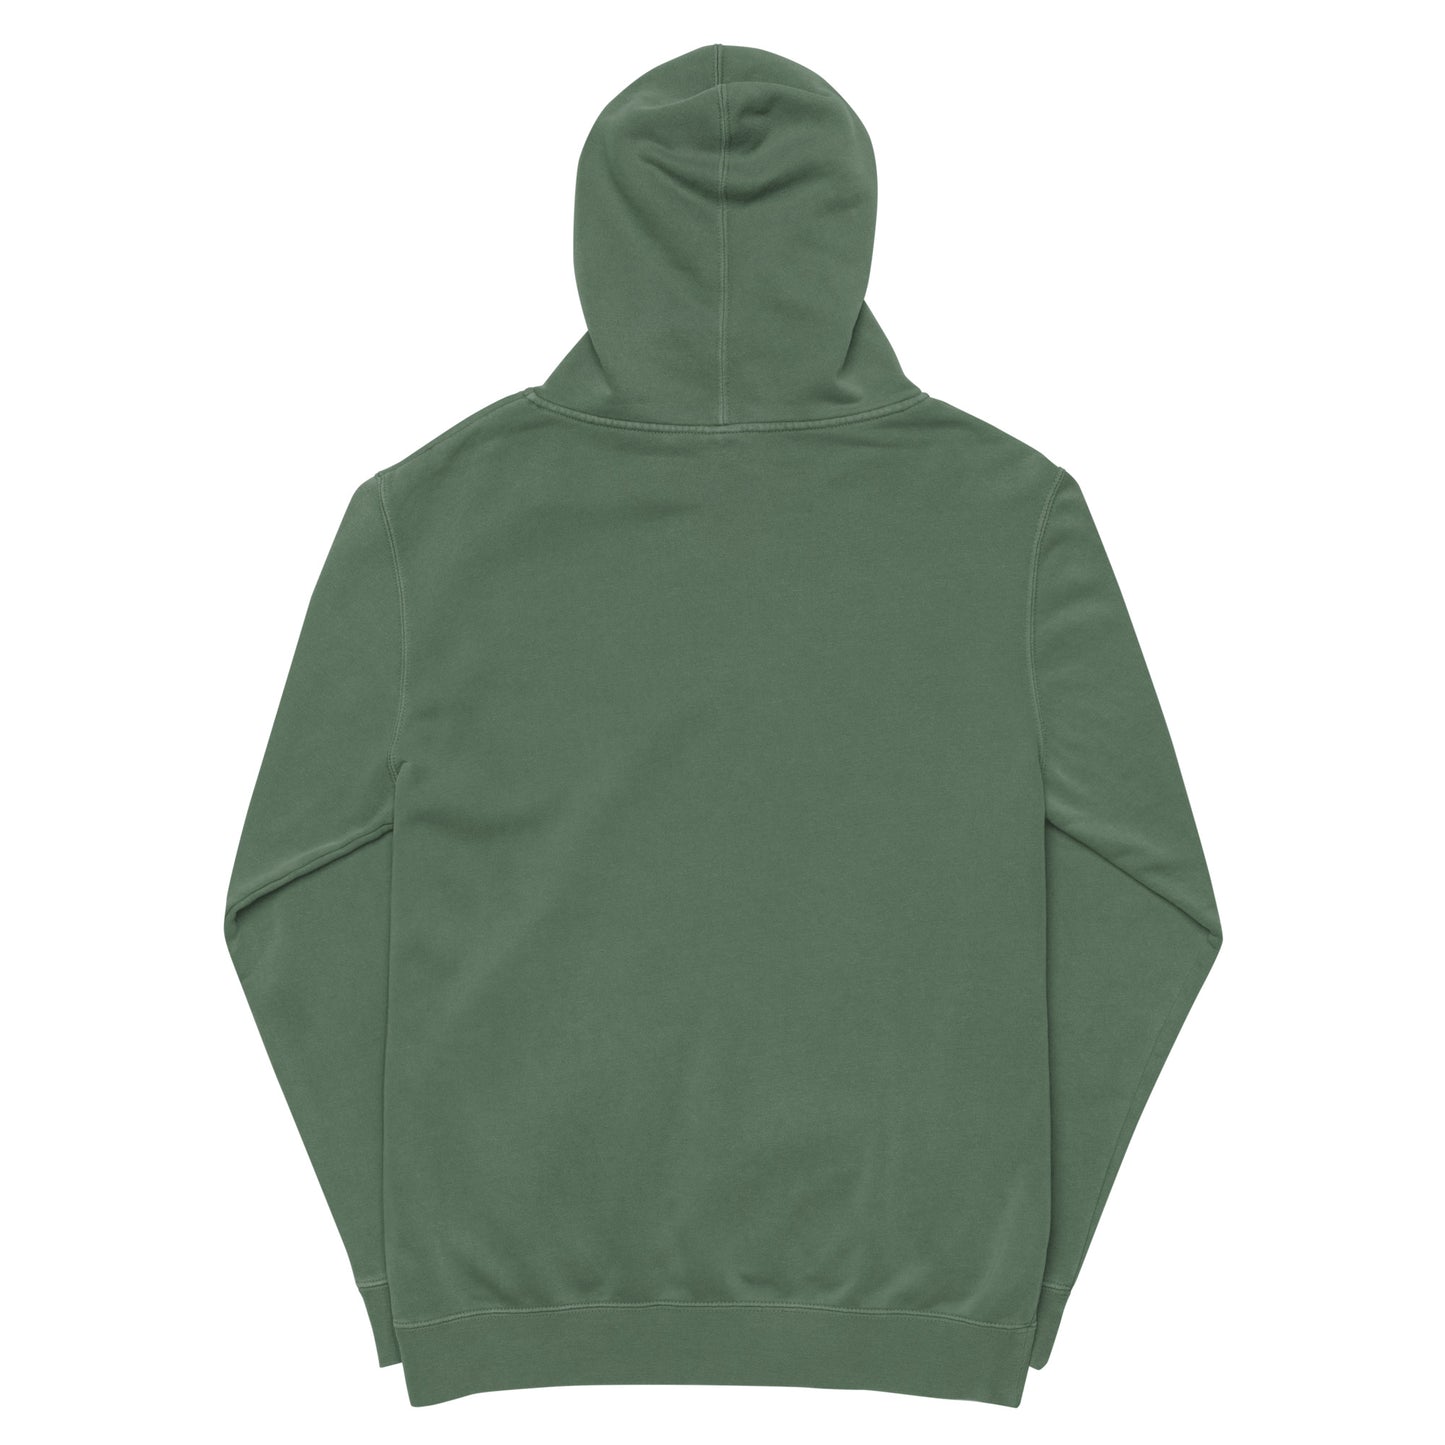 CROWN pigment-dyed hoodie